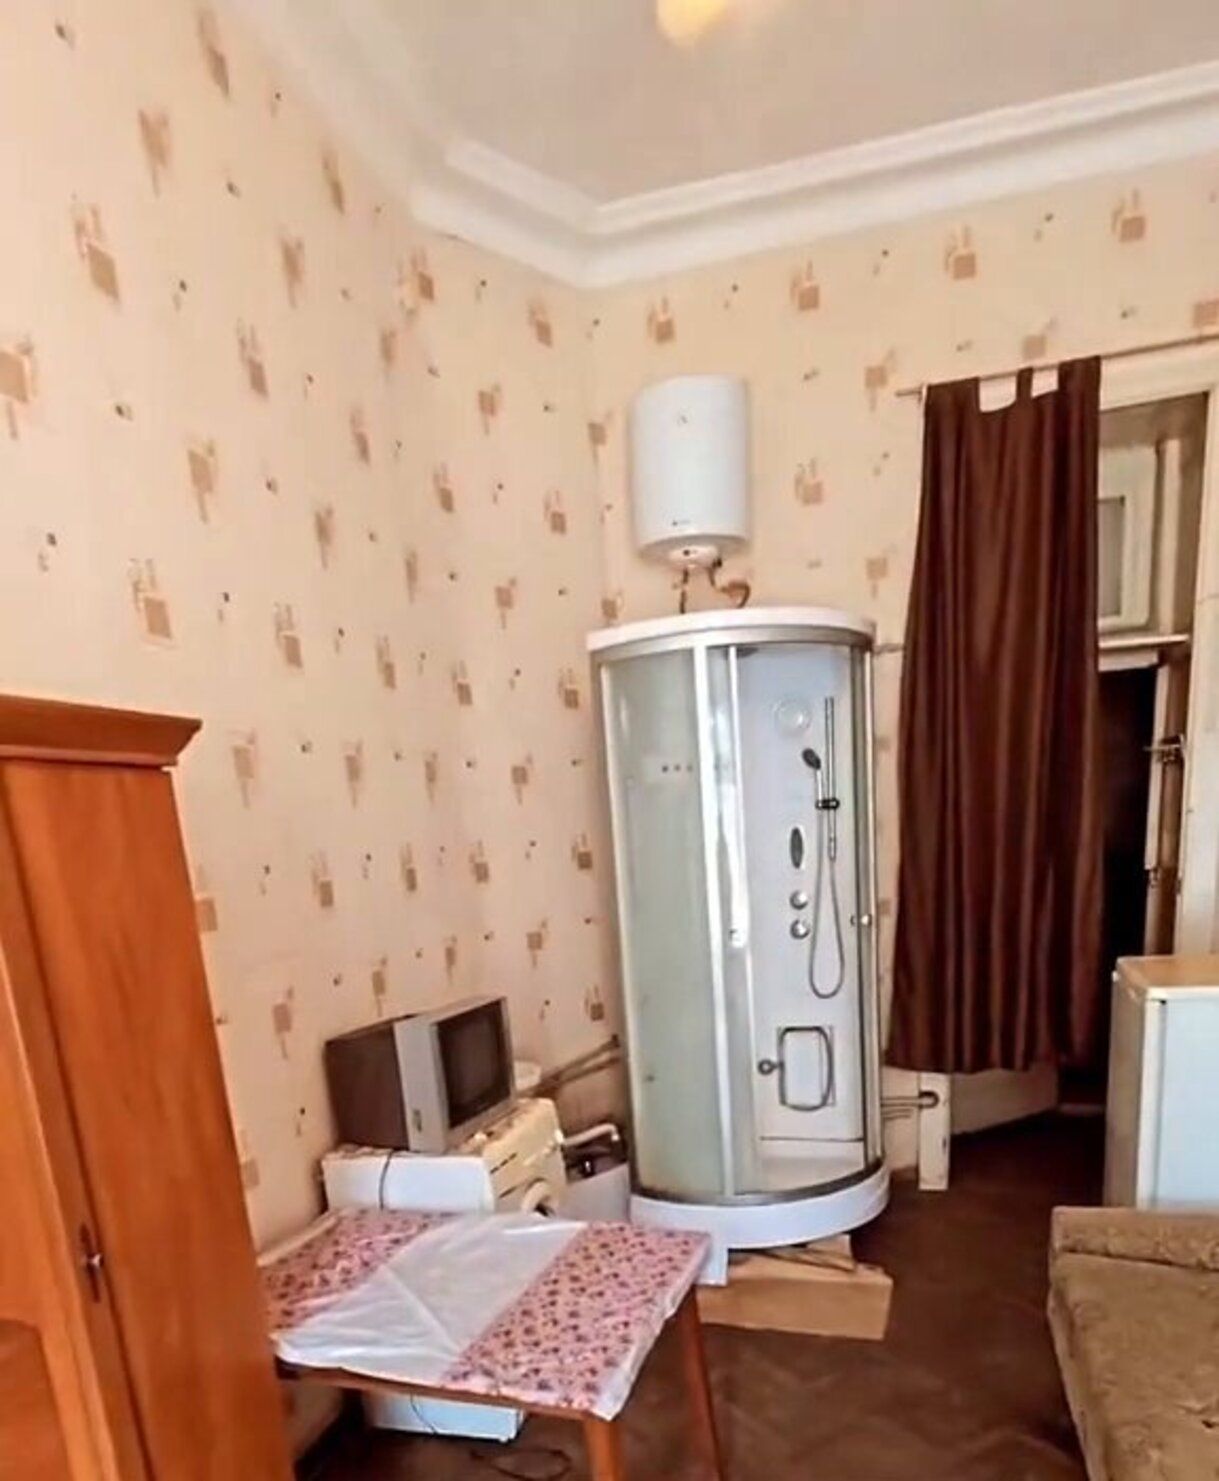 Комната в коммунальной квартире - сколько стоит такое жилье в центре Одессы - Недвижимость